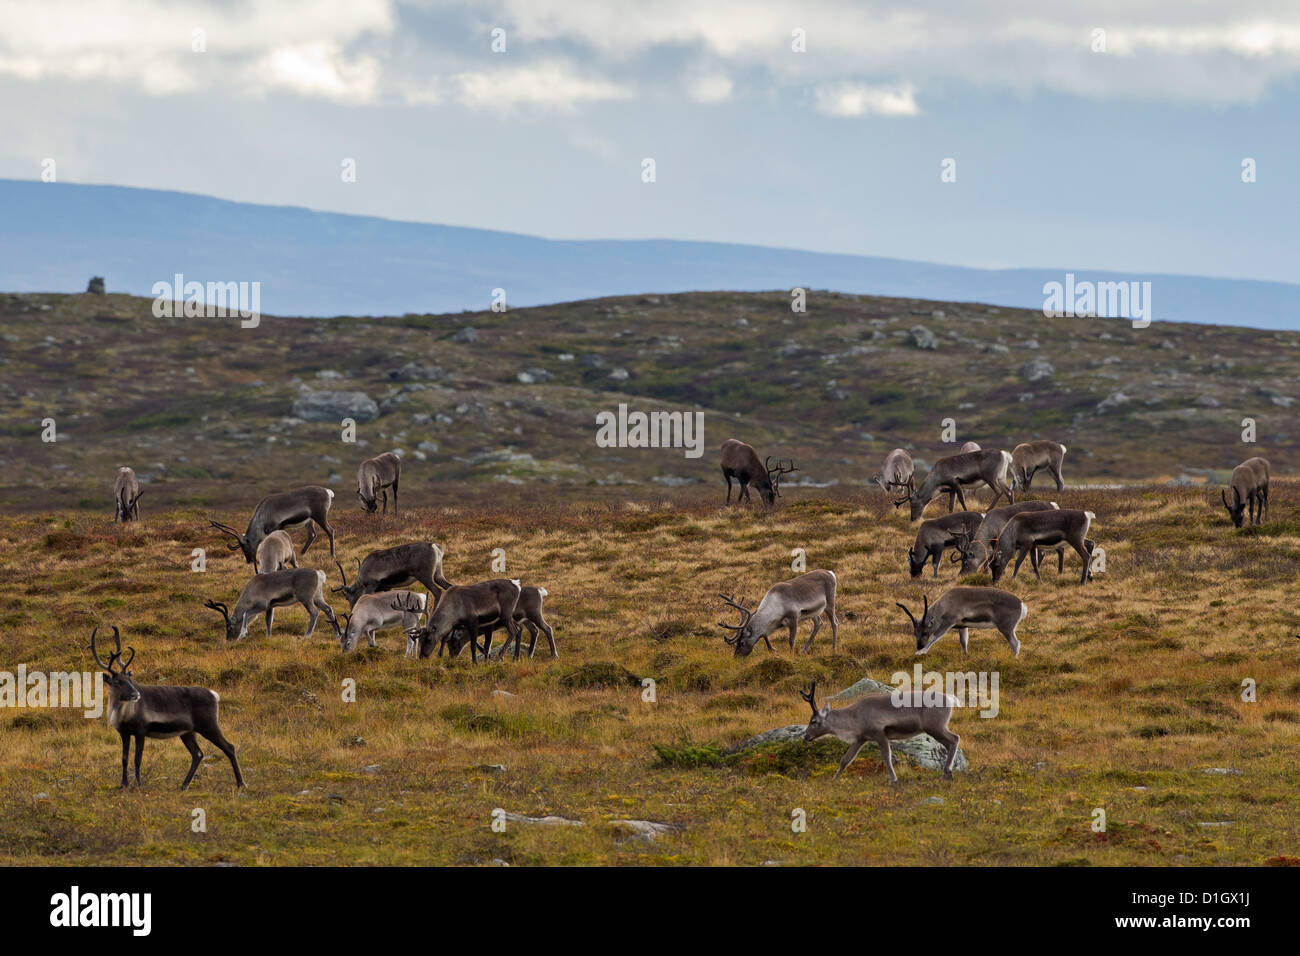 Le renne (Rangifer tarandus) troupeau avec bois couverts en velours de pâturage sur la toundra en automne, Jämtland, Suède, Scandinavie Banque D'Images